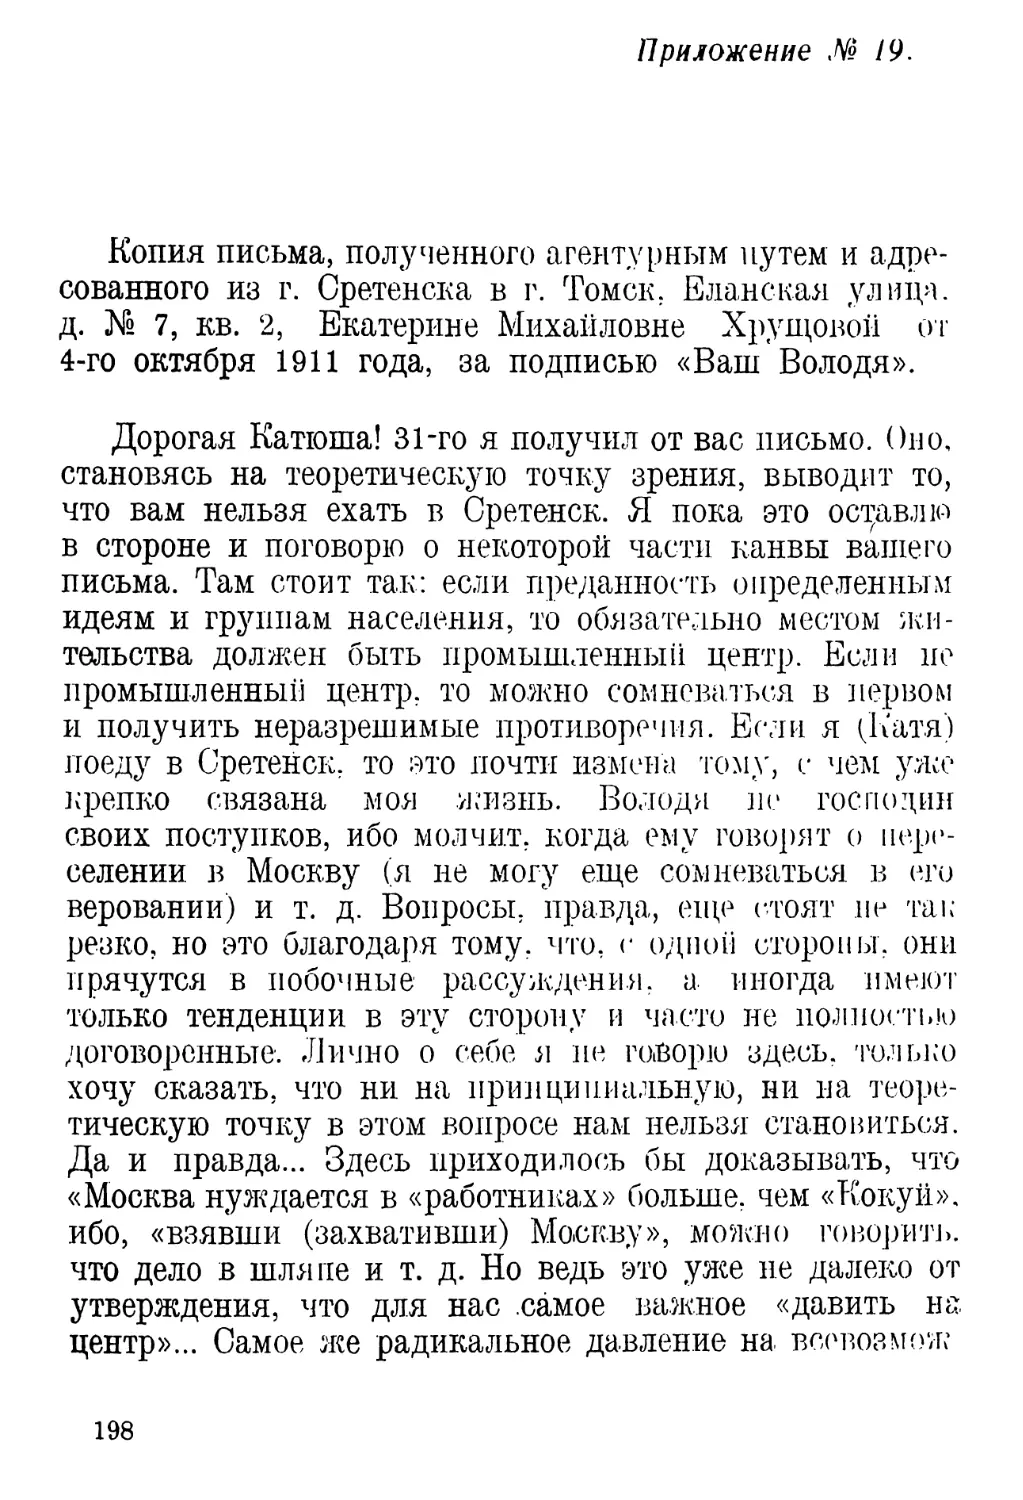 Приложение № 19 Копия письма, полученного агентурным путем и адресованного из г. Сретенска в г. Томск.